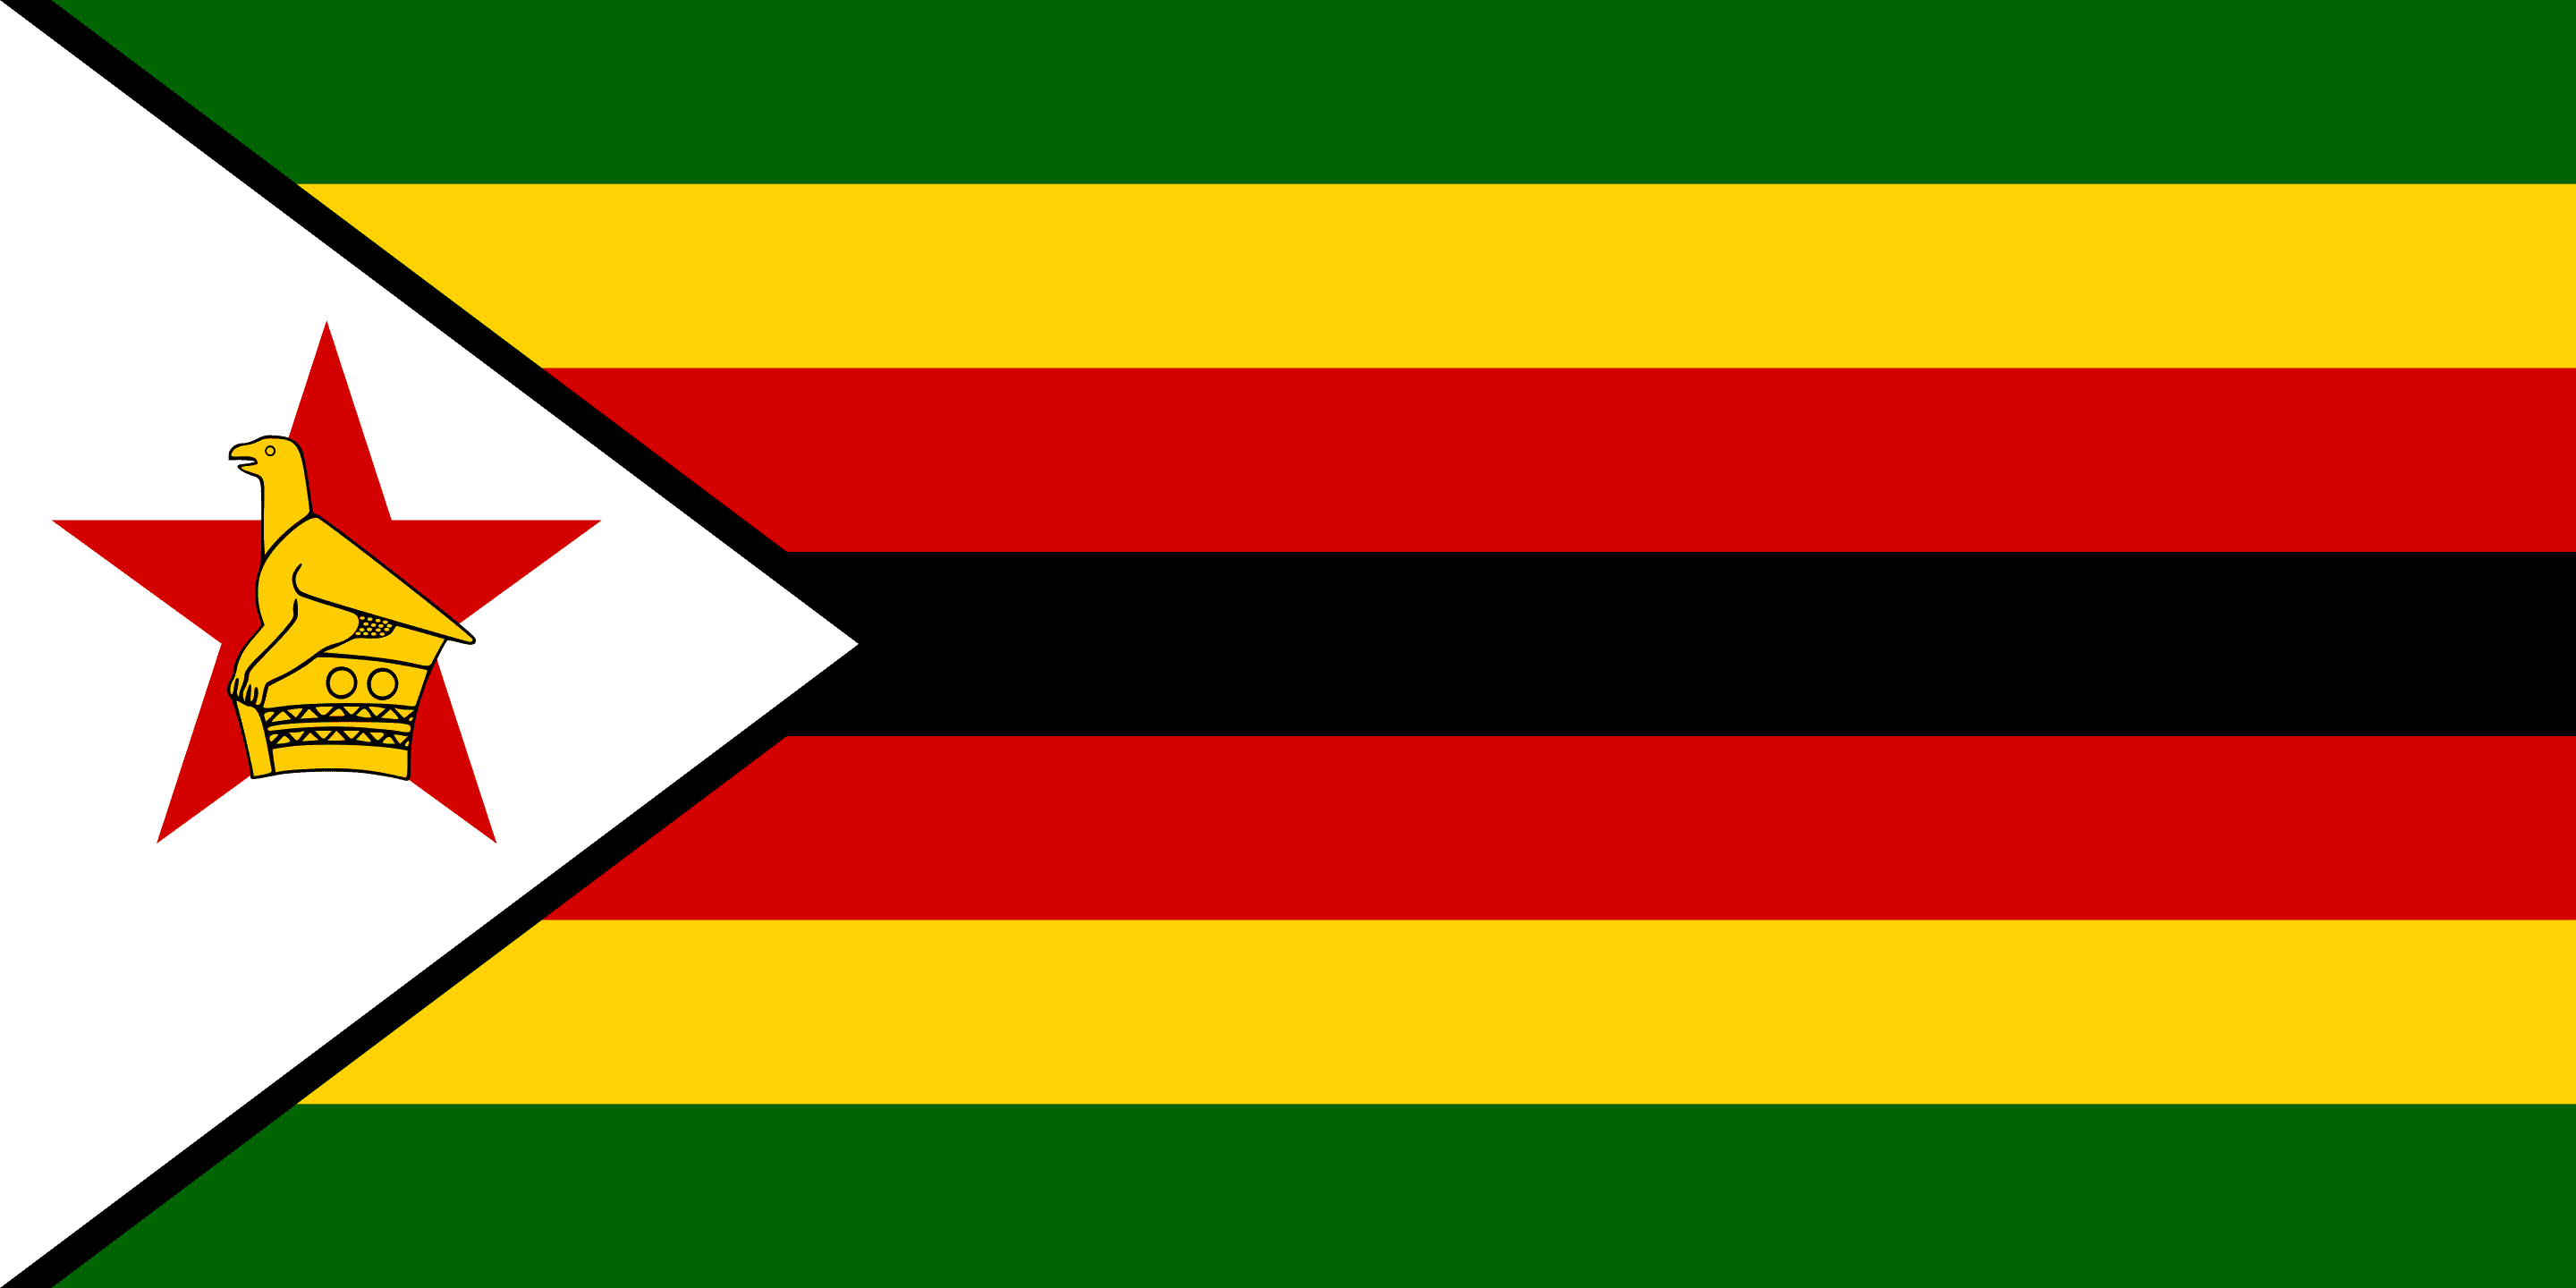 Facts about Zimbabwe